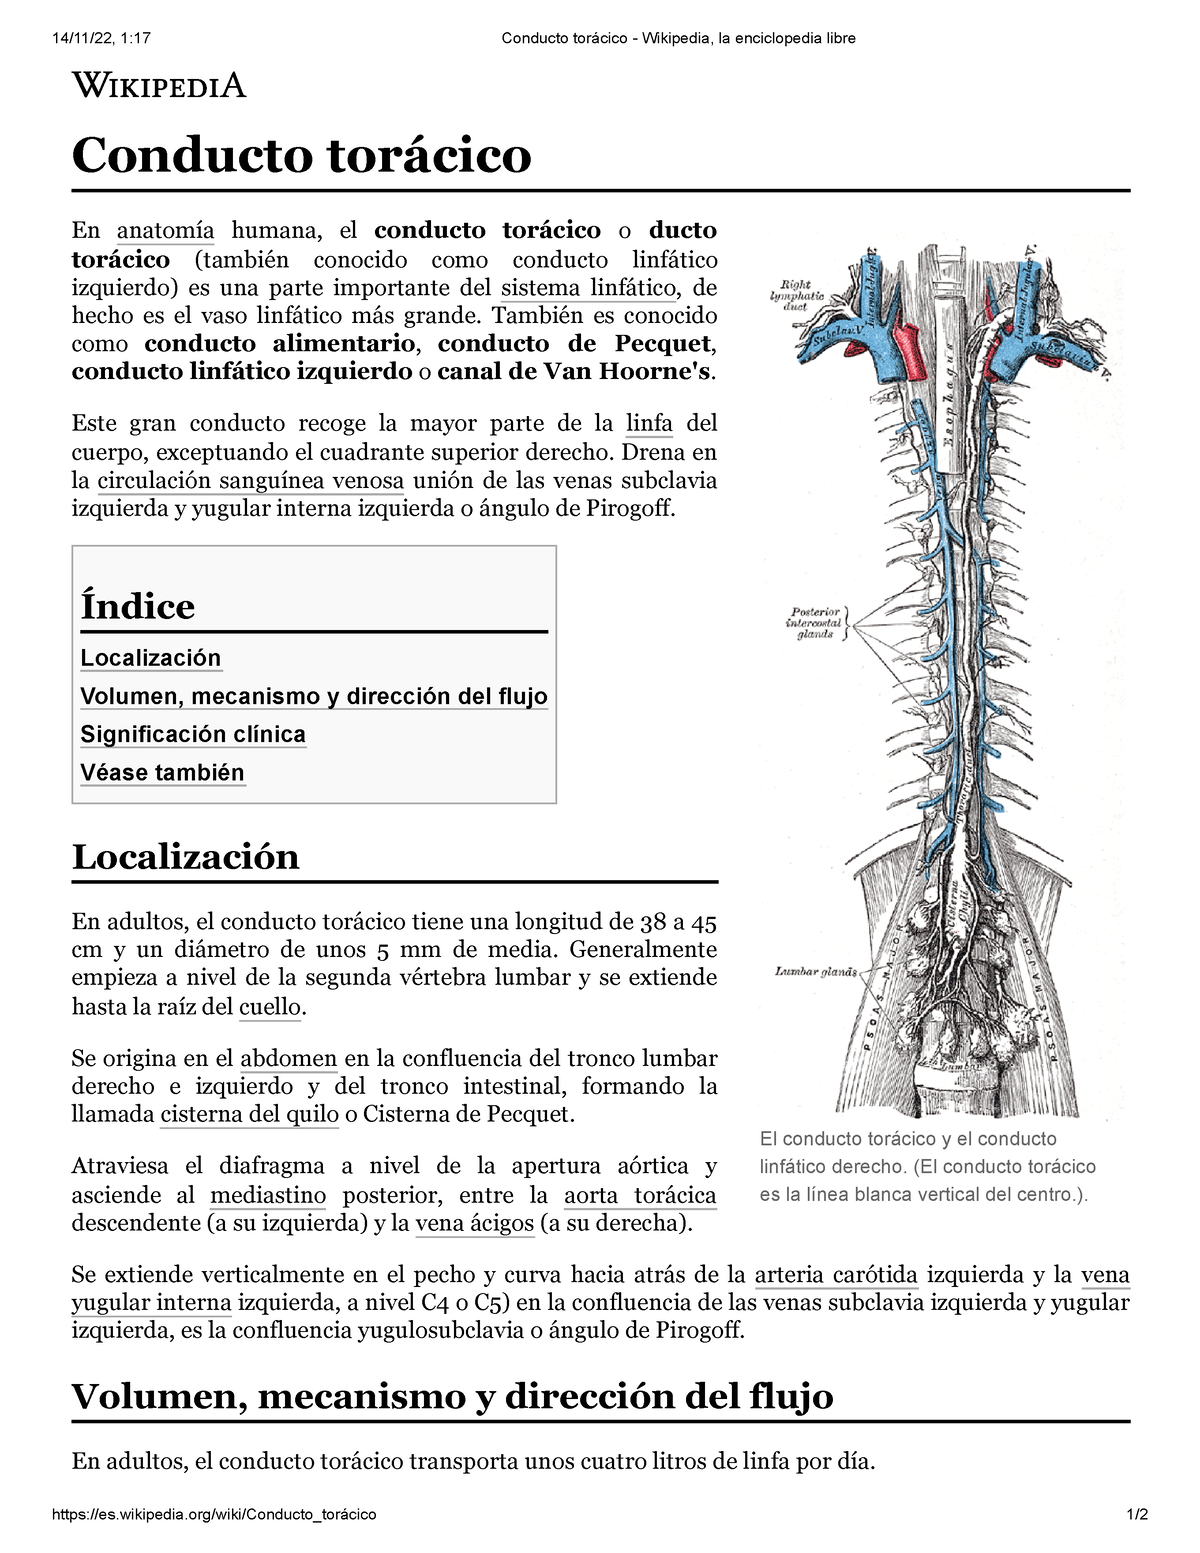 Sistema (anatomía) - Wikipedia, la enciclopedia libre